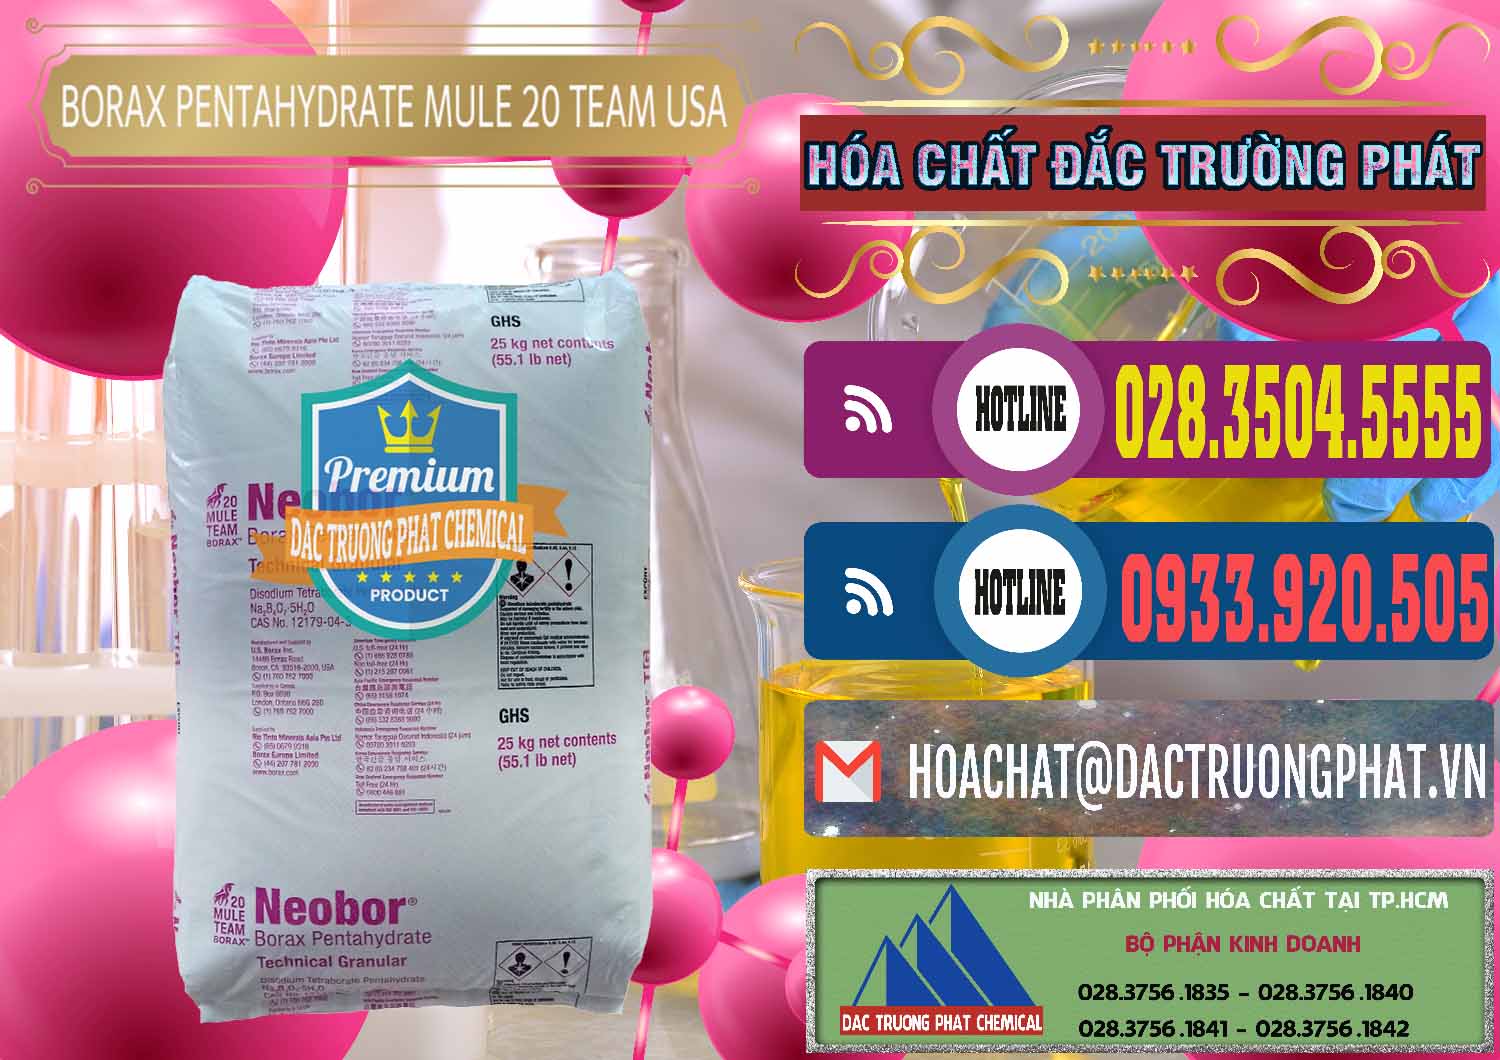 Bán & phân phối Borax Pentahydrate - NA2B4O7.5H2O Mỹ USA - Mule 20 Team - 0034 - Nơi phân phối và cung cấp hóa chất tại TP.HCM - muabanhoachat.com.vn